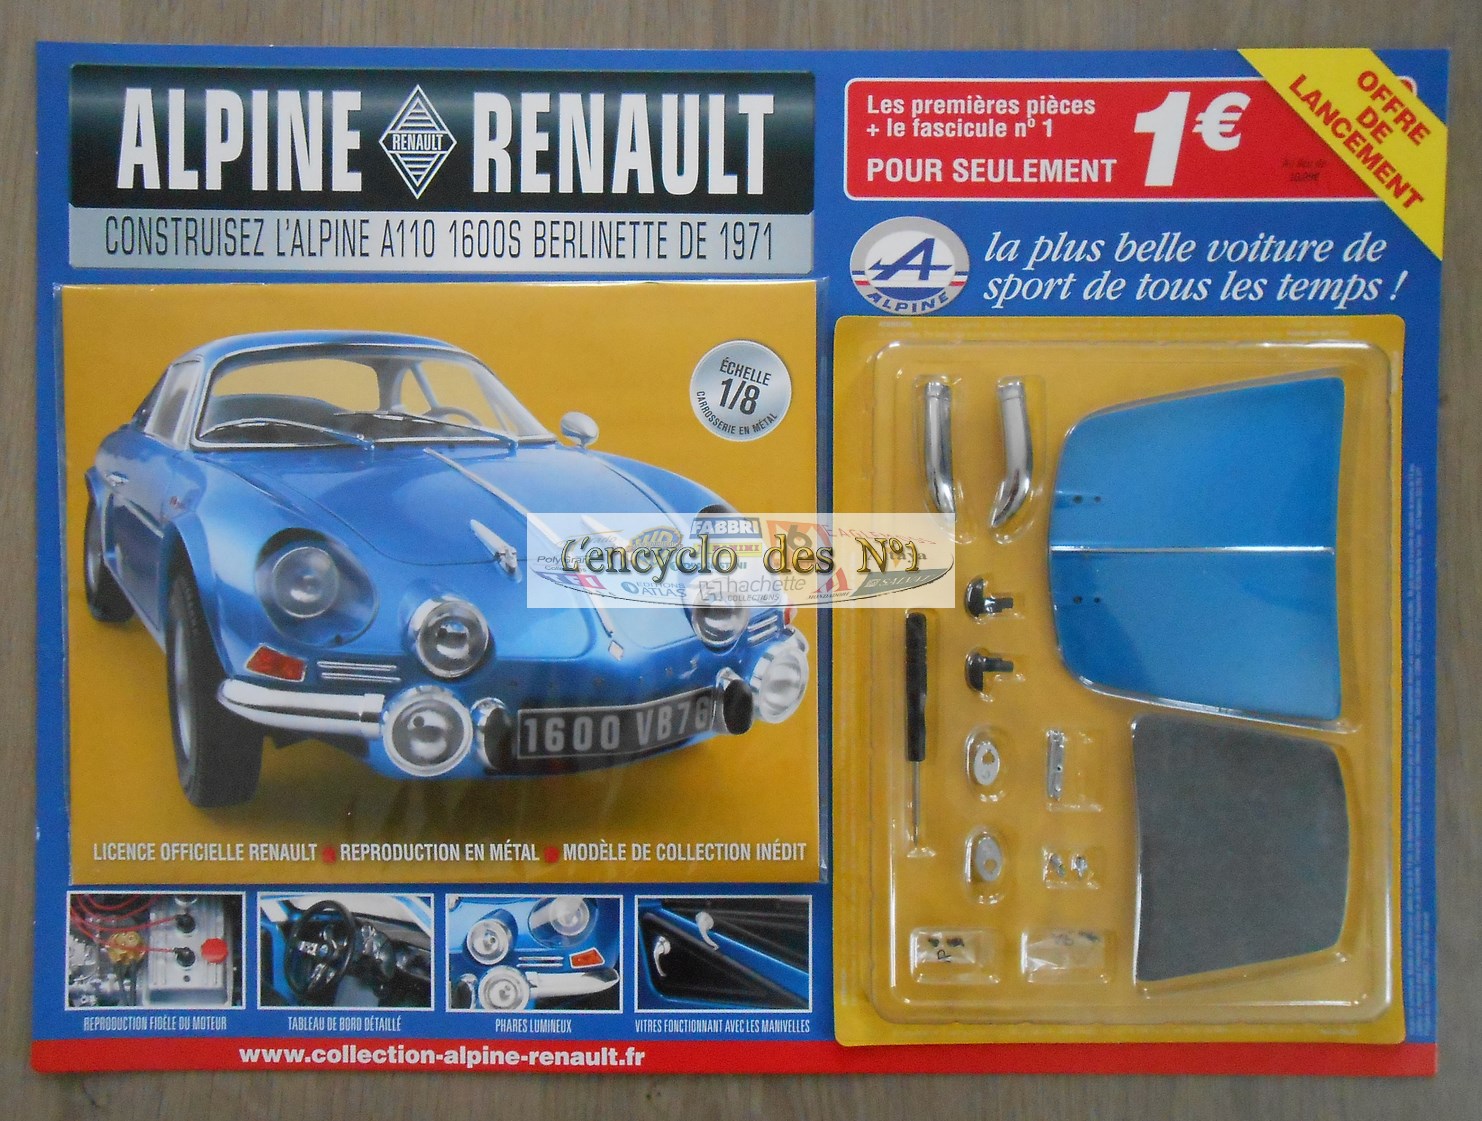 N° 1 Construisez l'Alpine reanult A110 Berlinette de 1971 - L' encyclo des  N° 1